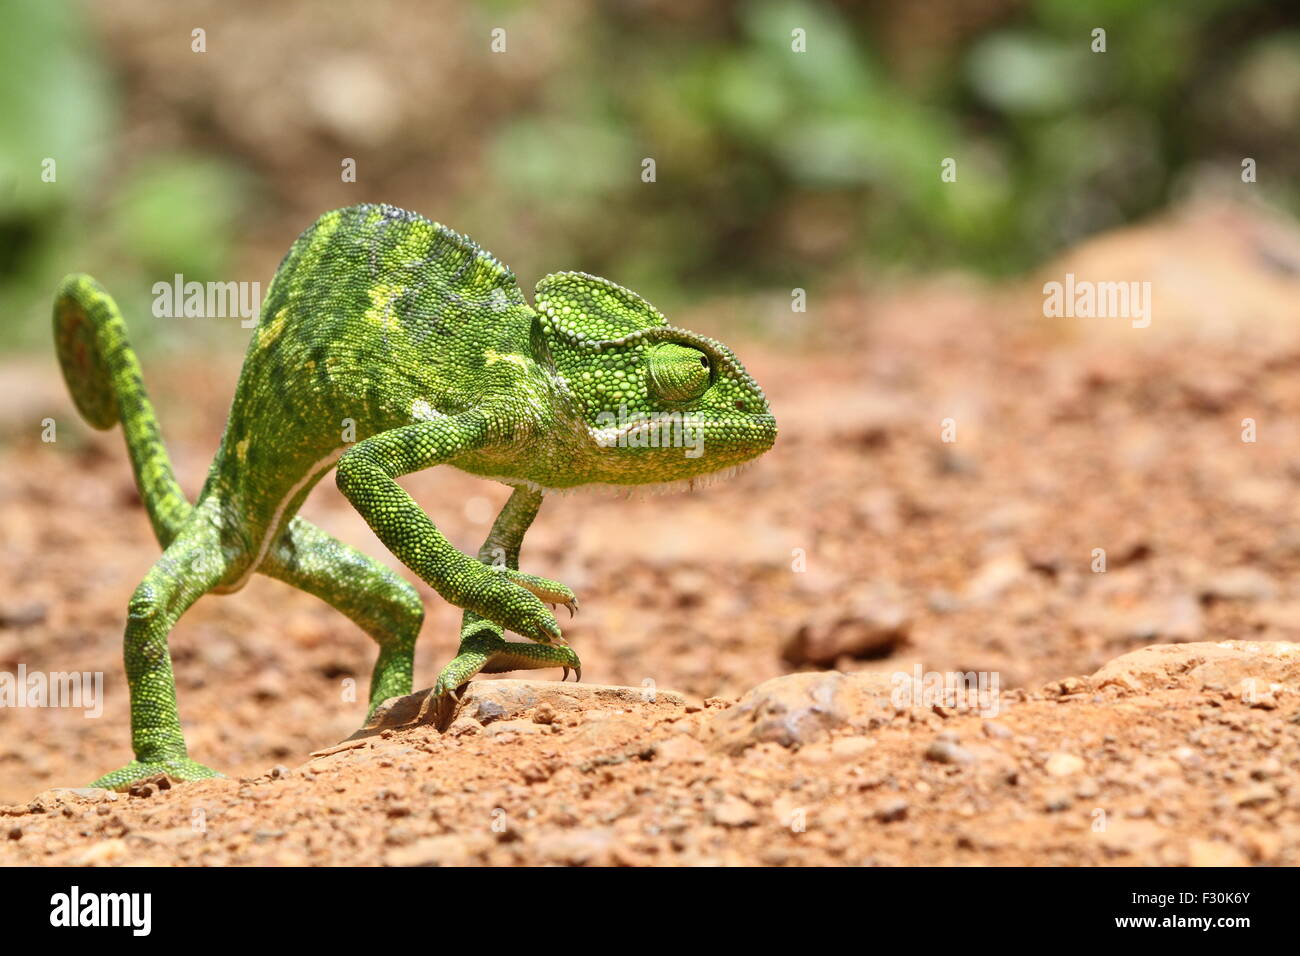 Common Chameleon (Mediterranean chameleon) walking on ...